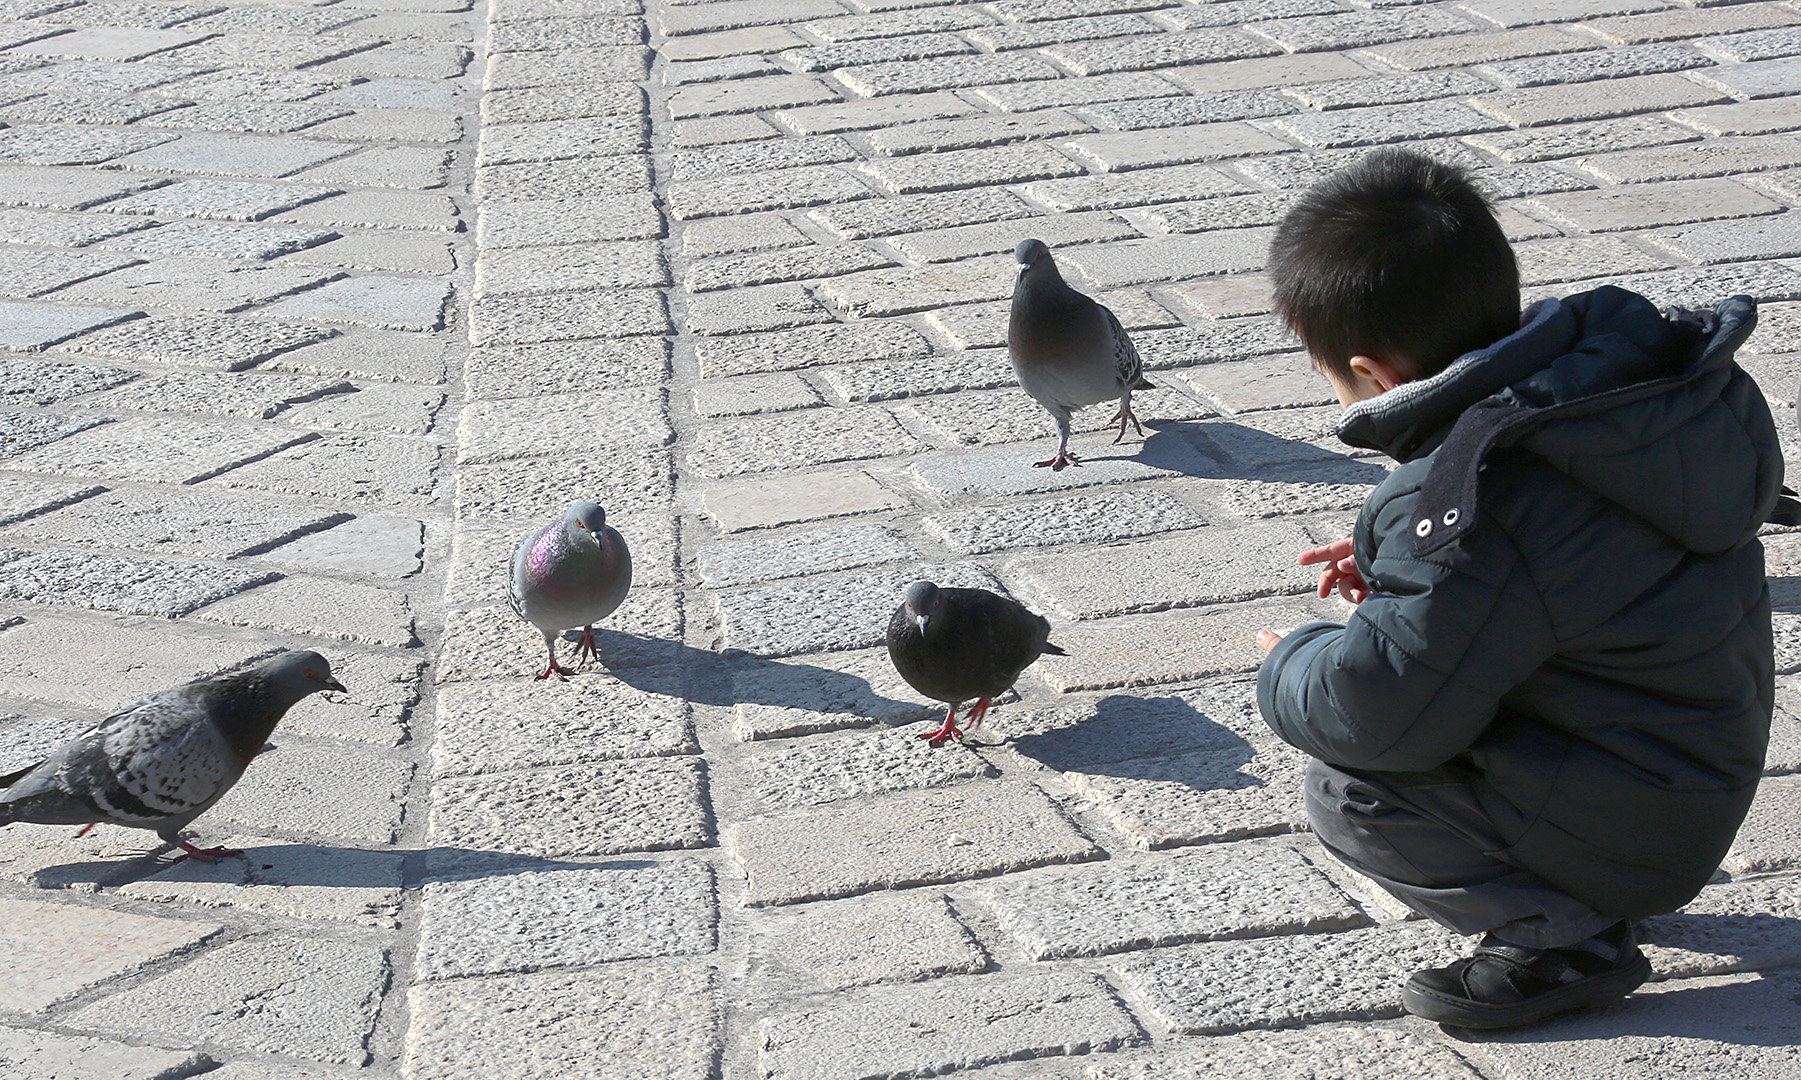 ... 4 pigeons